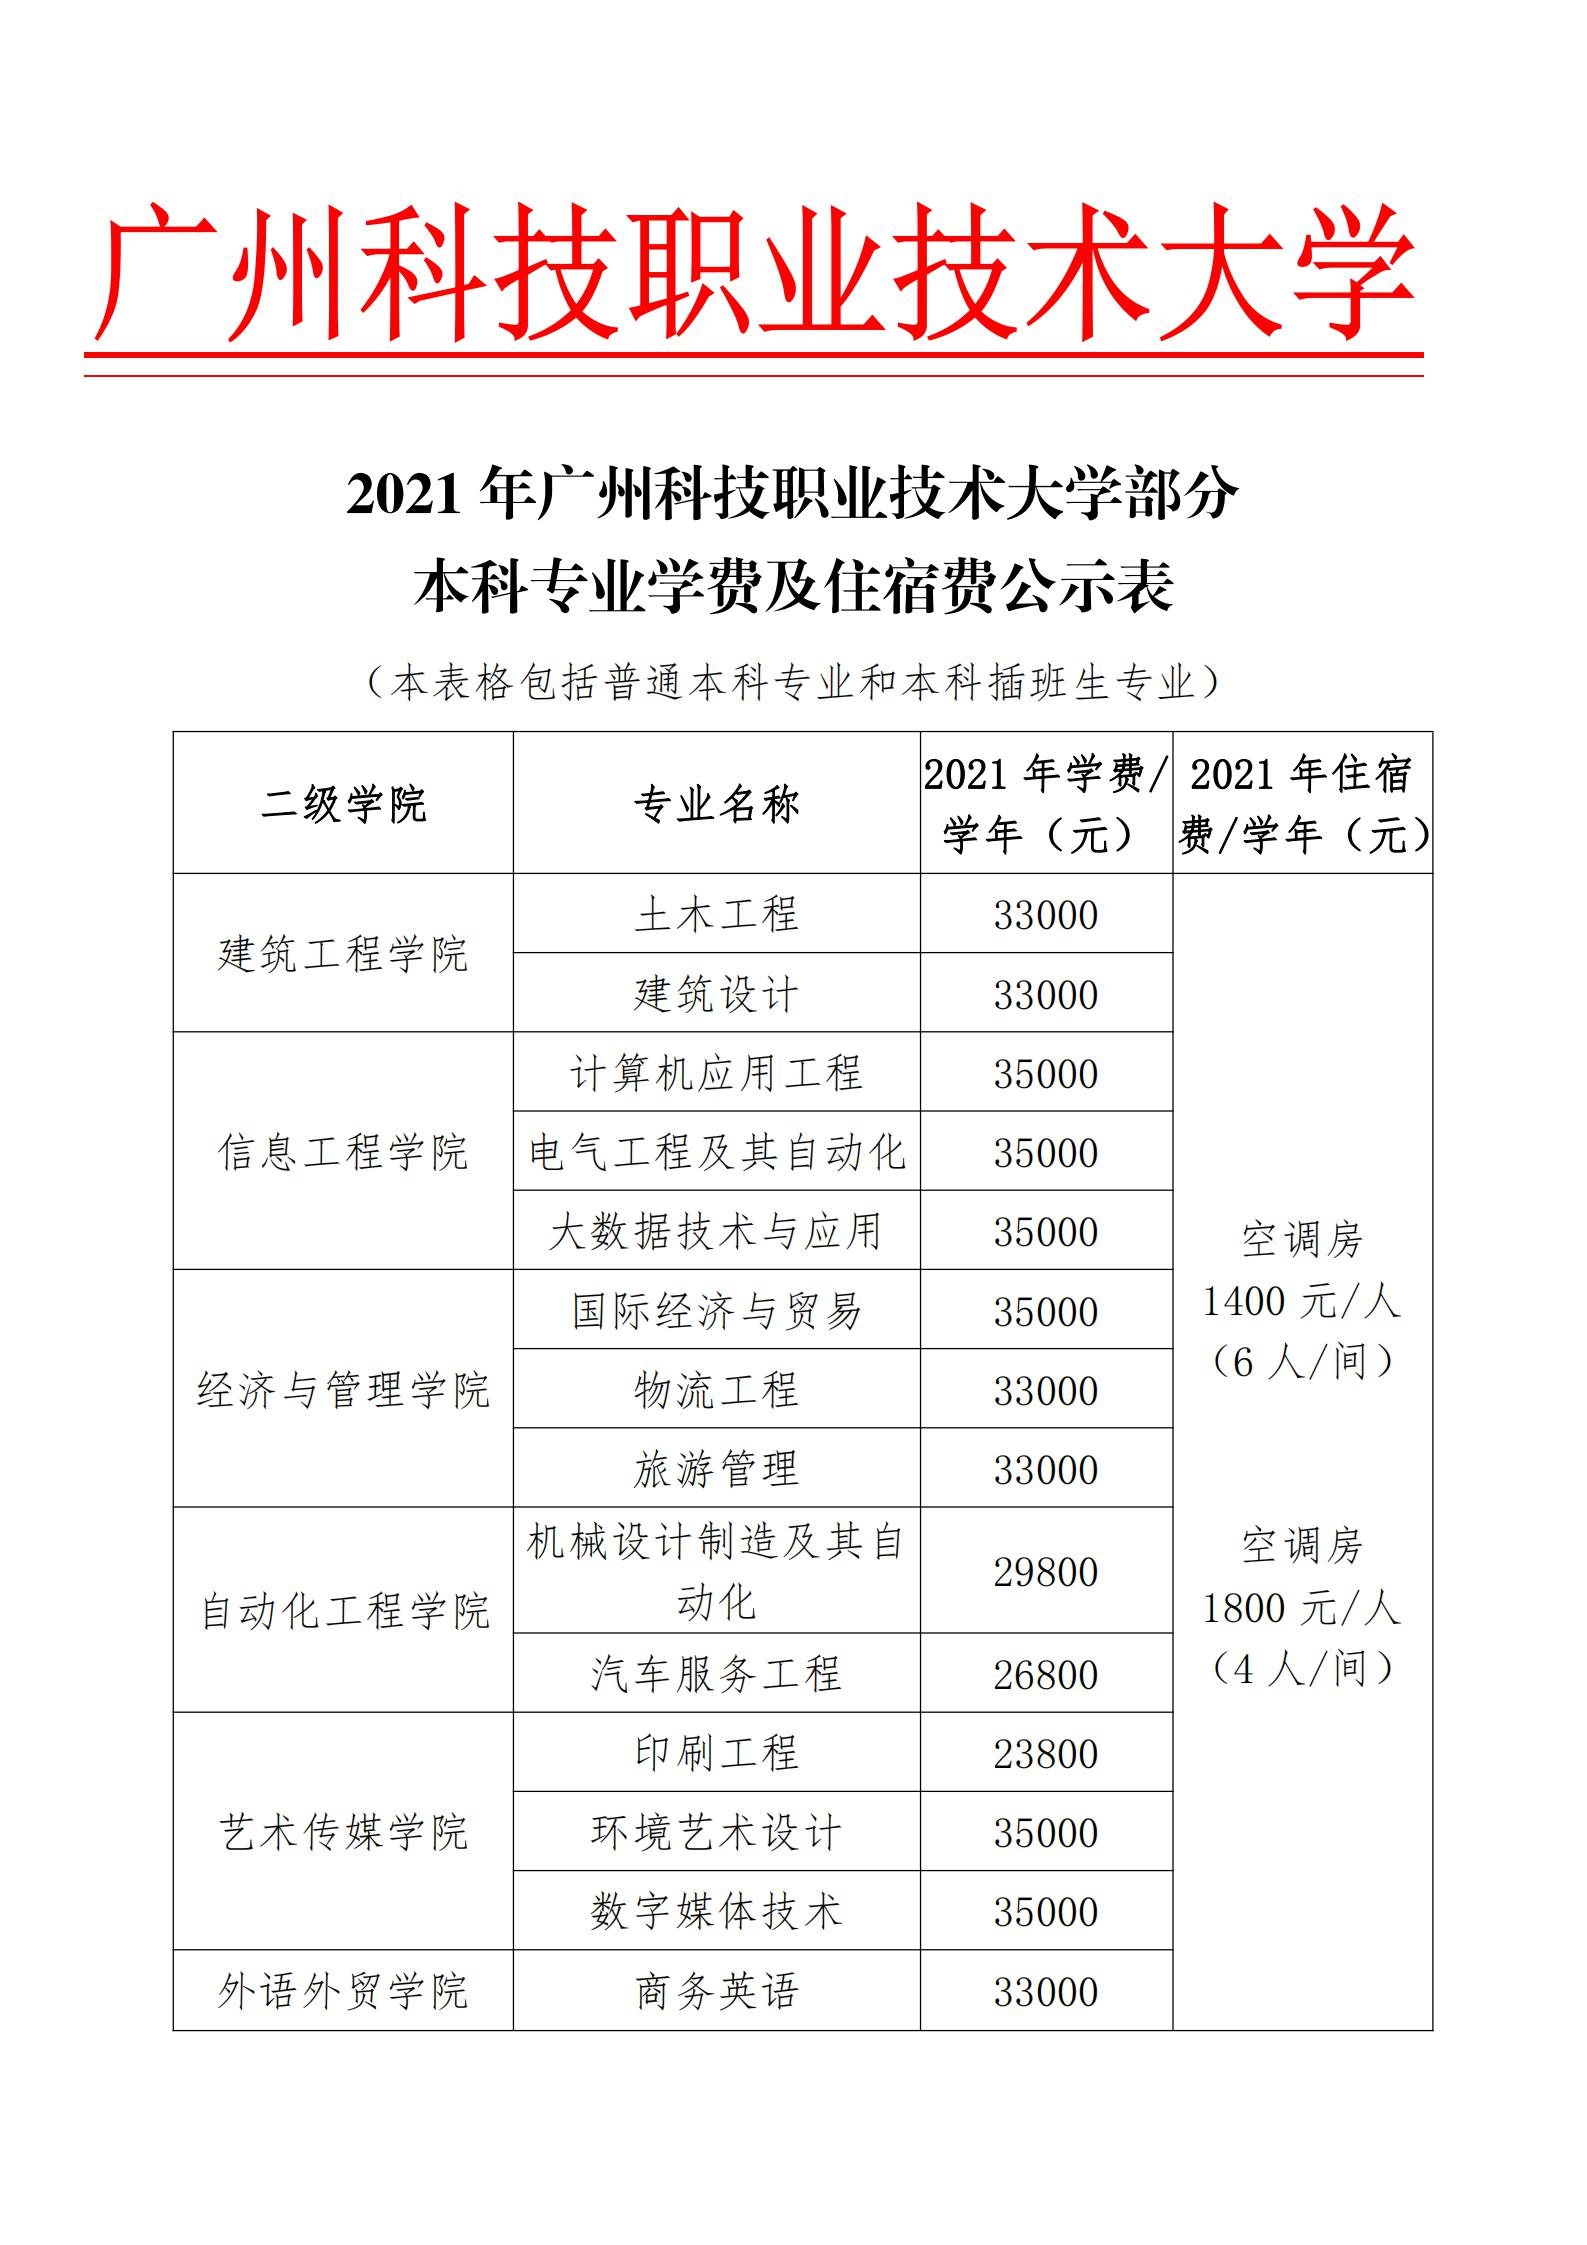 2021年广州科技职业技术大学招生本科专业学费及住宿费公示表_00.jpg